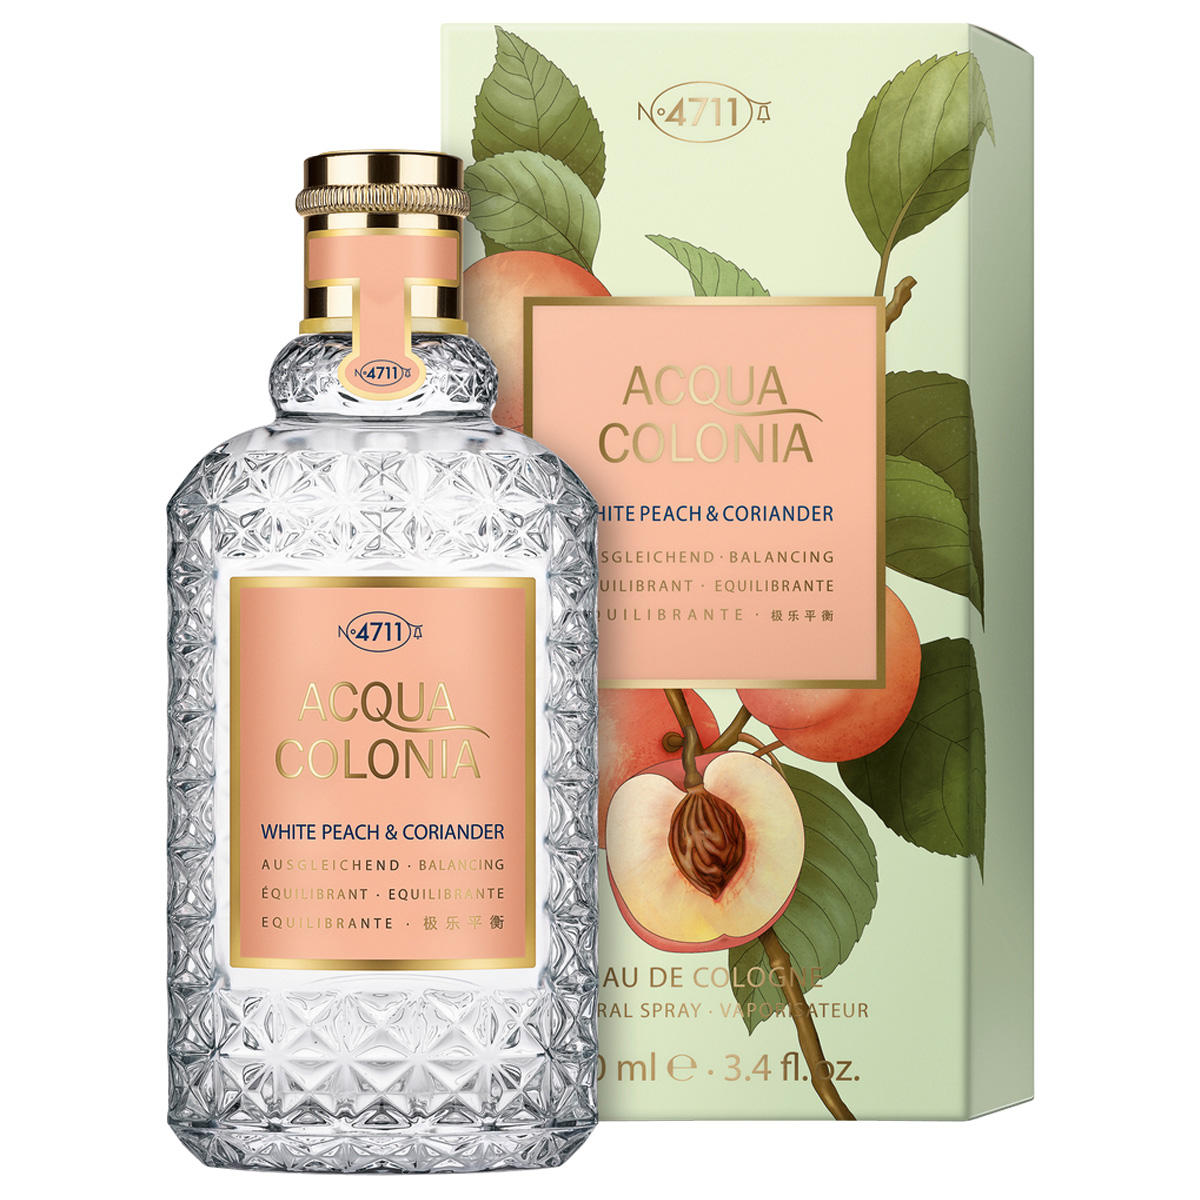 4711 Acqua Colonia White Peach & Coriander Eau de Cologne 100 ml - 2